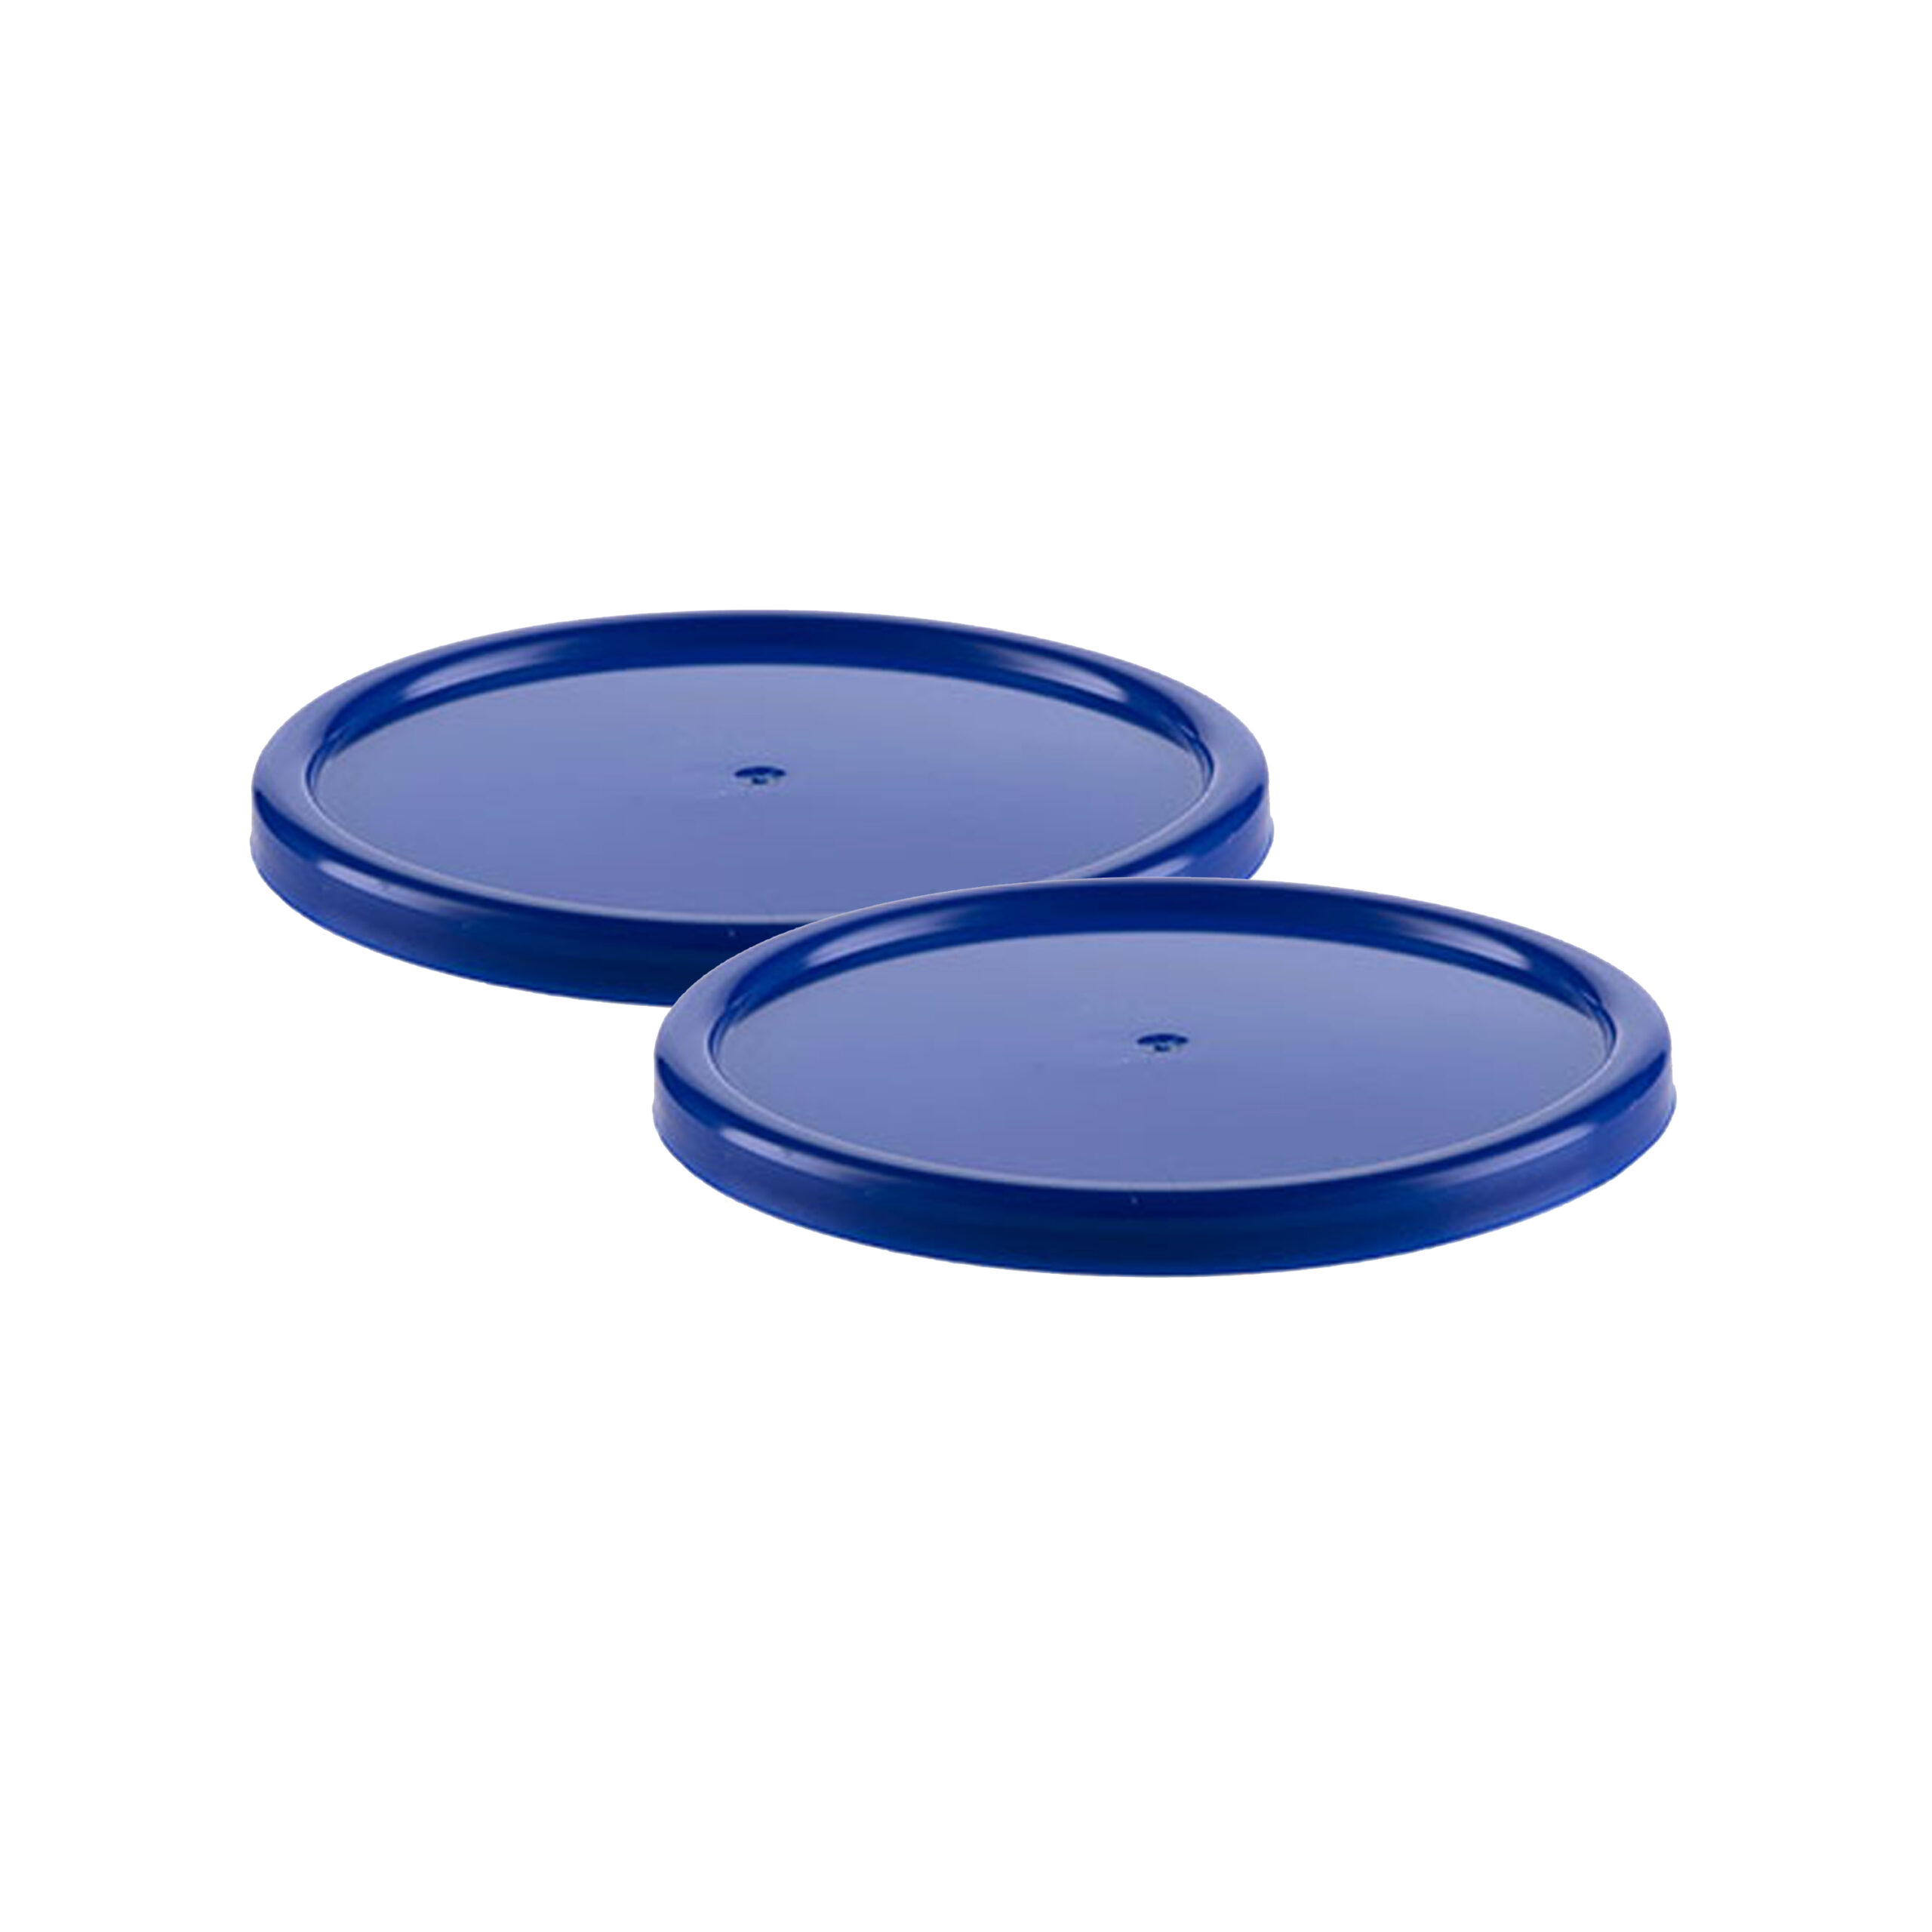 PP TUB LID BLUE
FOR 250/350/500
TUB (1x200)